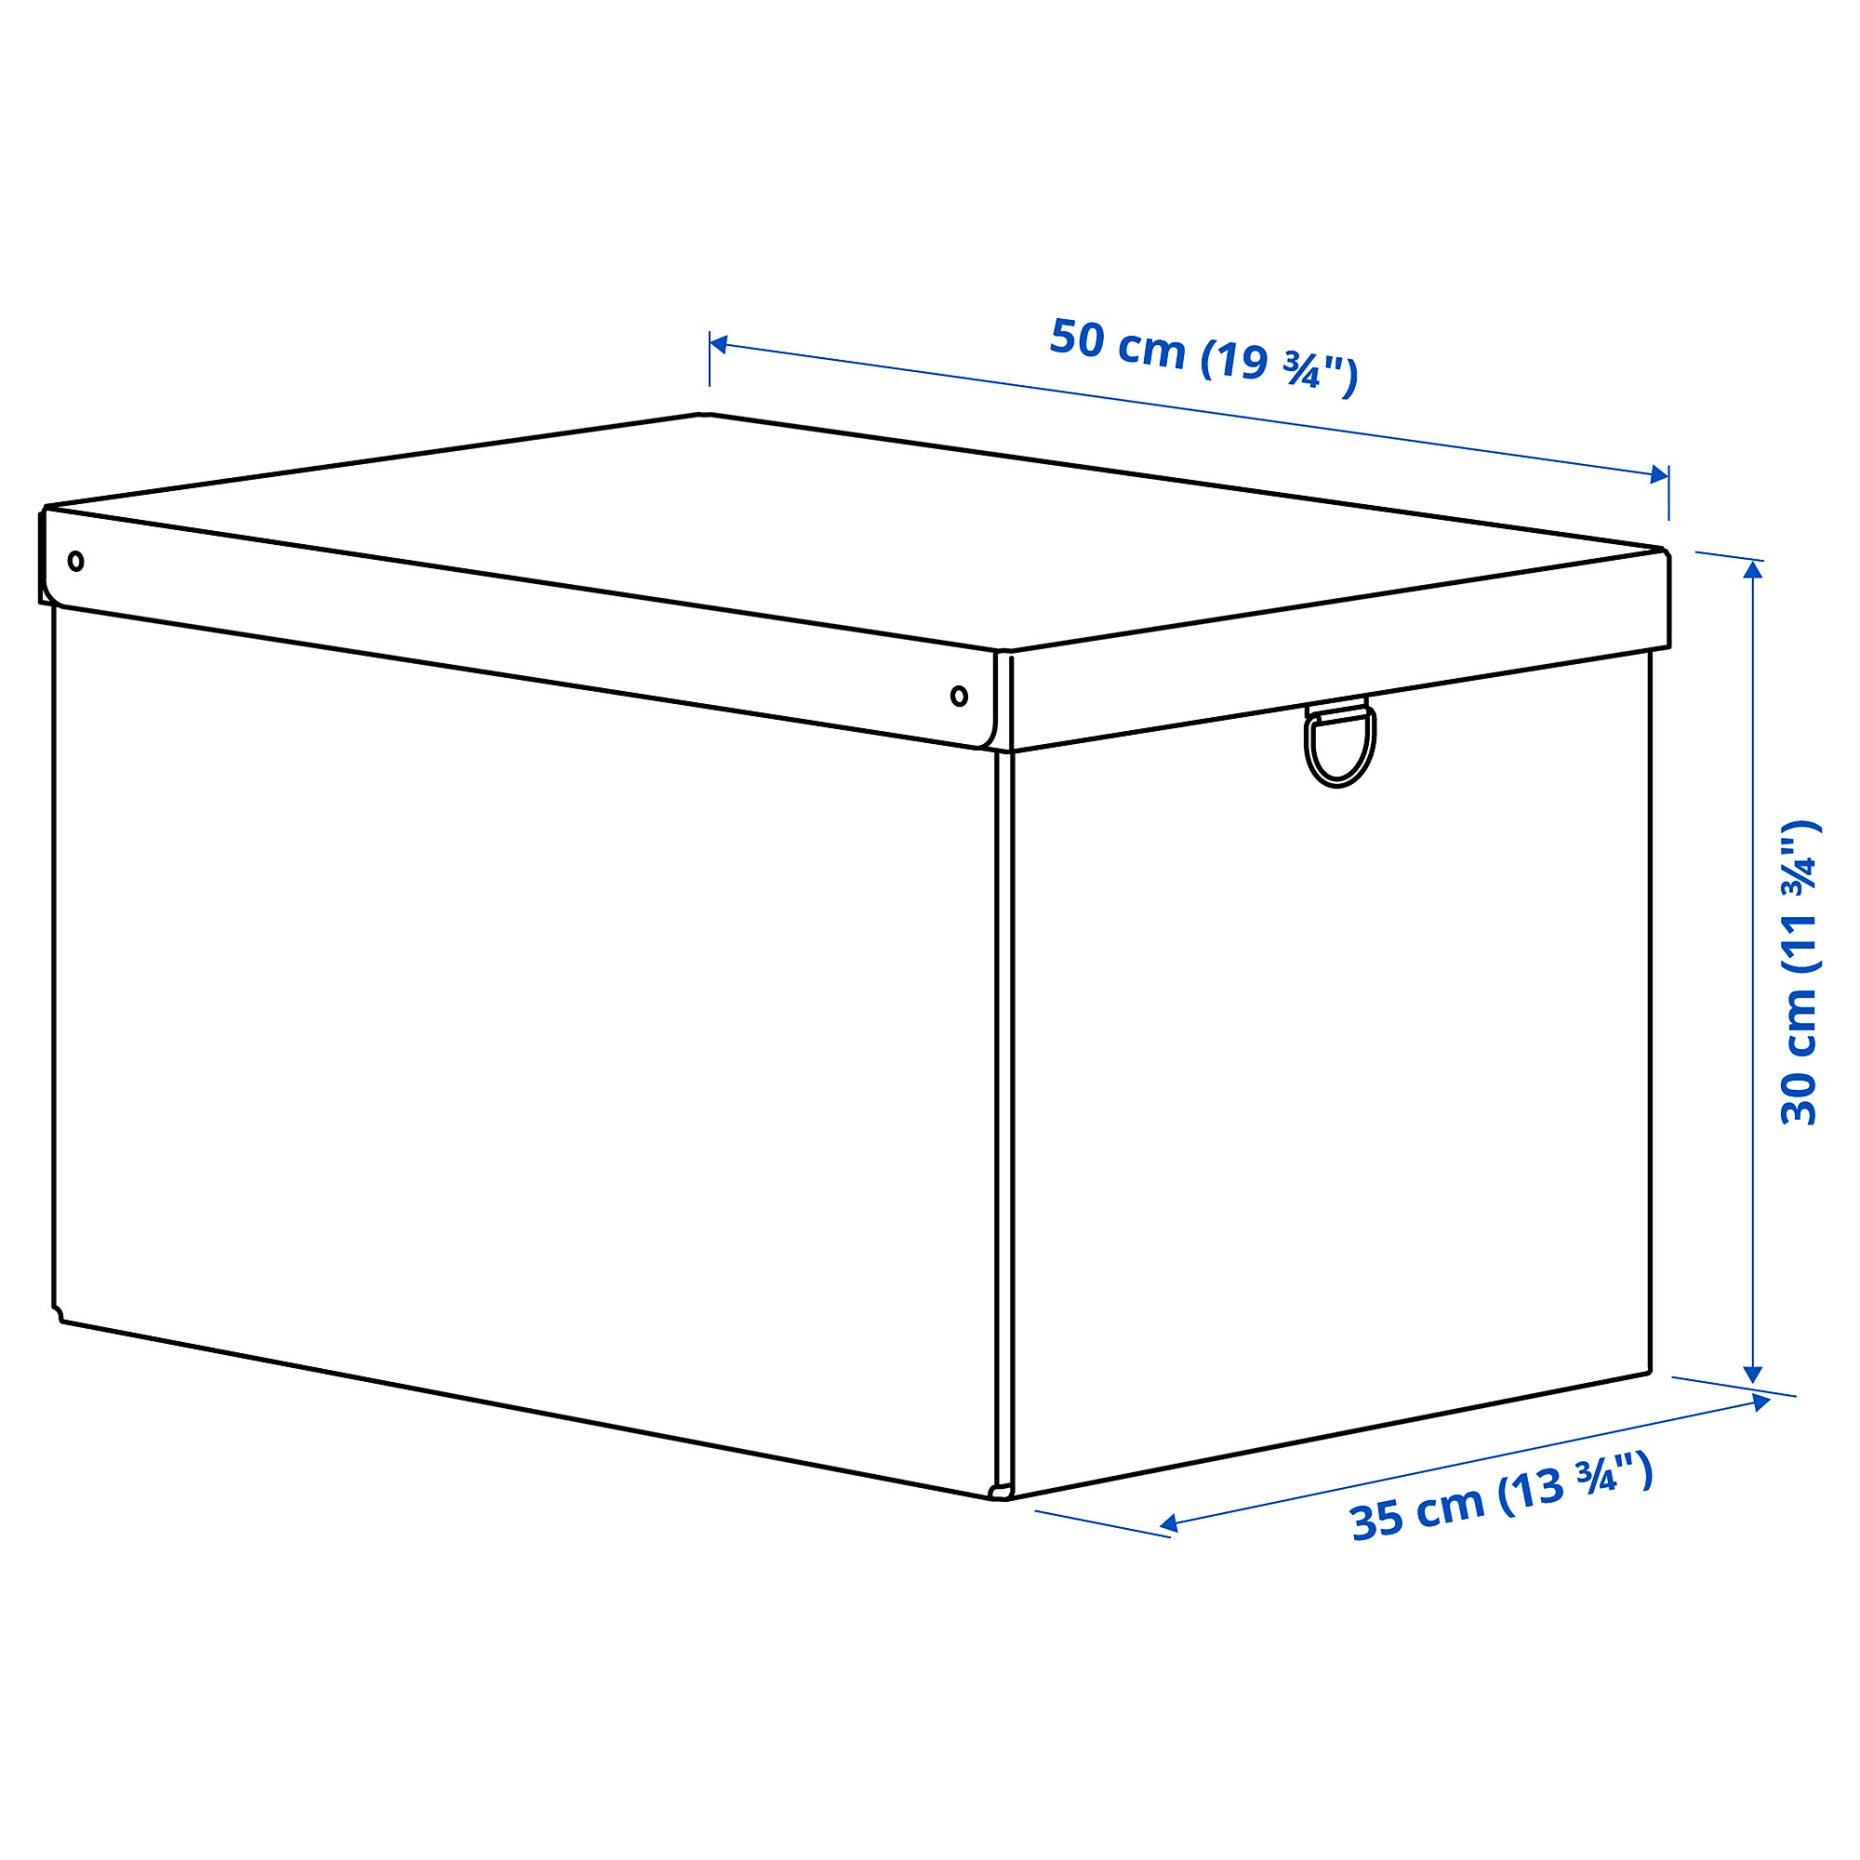 NIMM, storage box with lid, 35x50x30 cm, 005.200.53